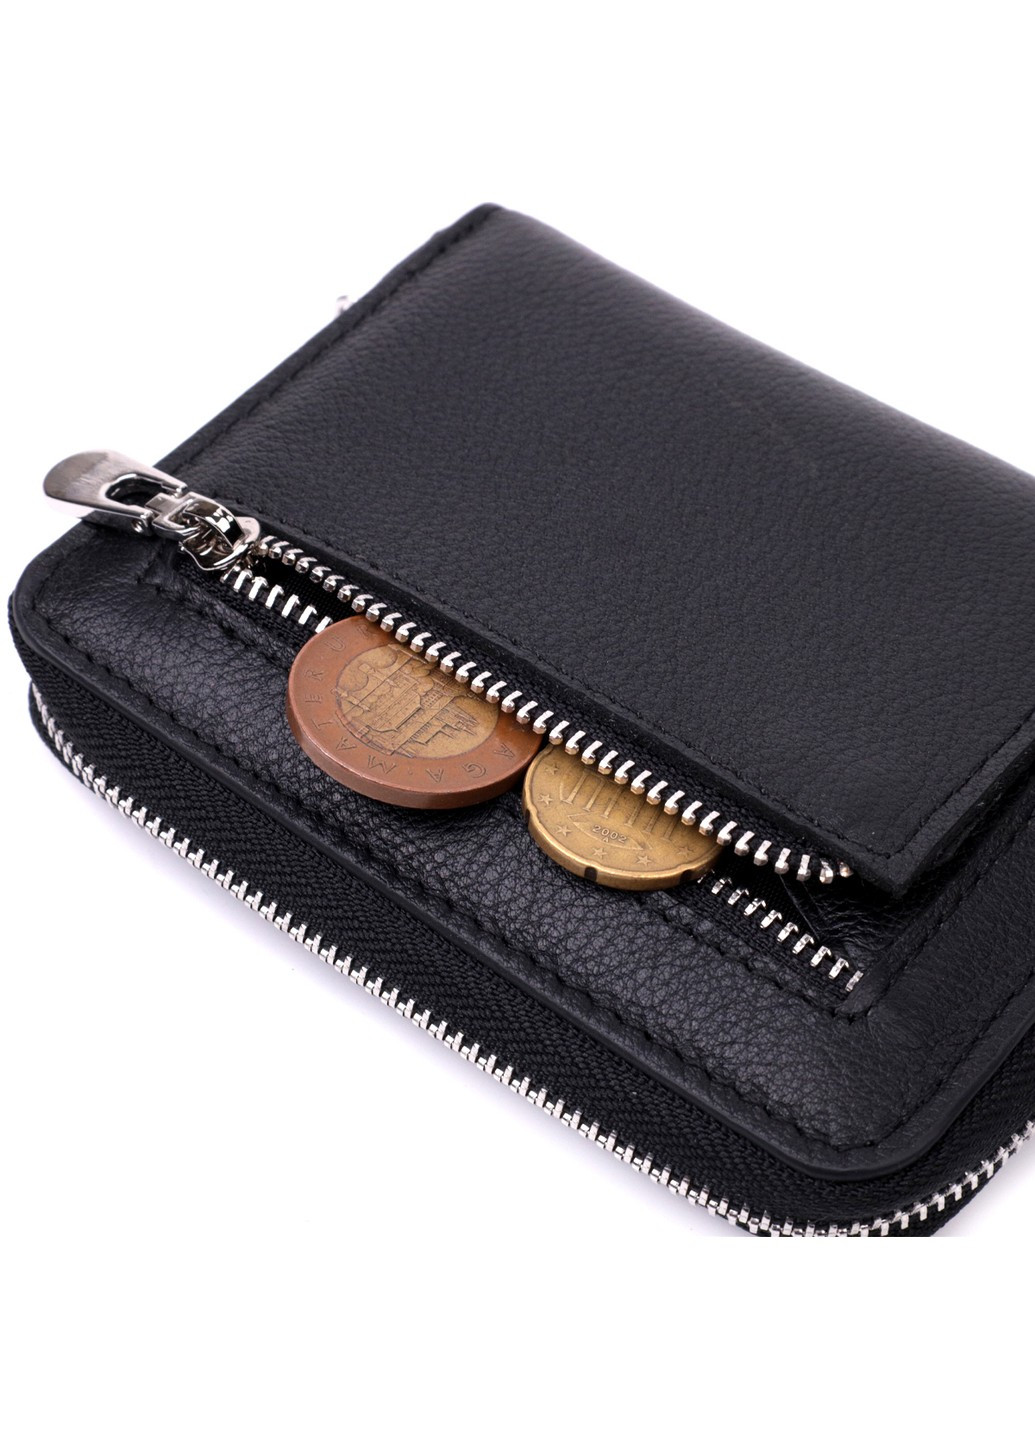 Кожаный кошелек для женщин на молнии с тисненым логотипом производителя 19489 Черный st leather (277980470)